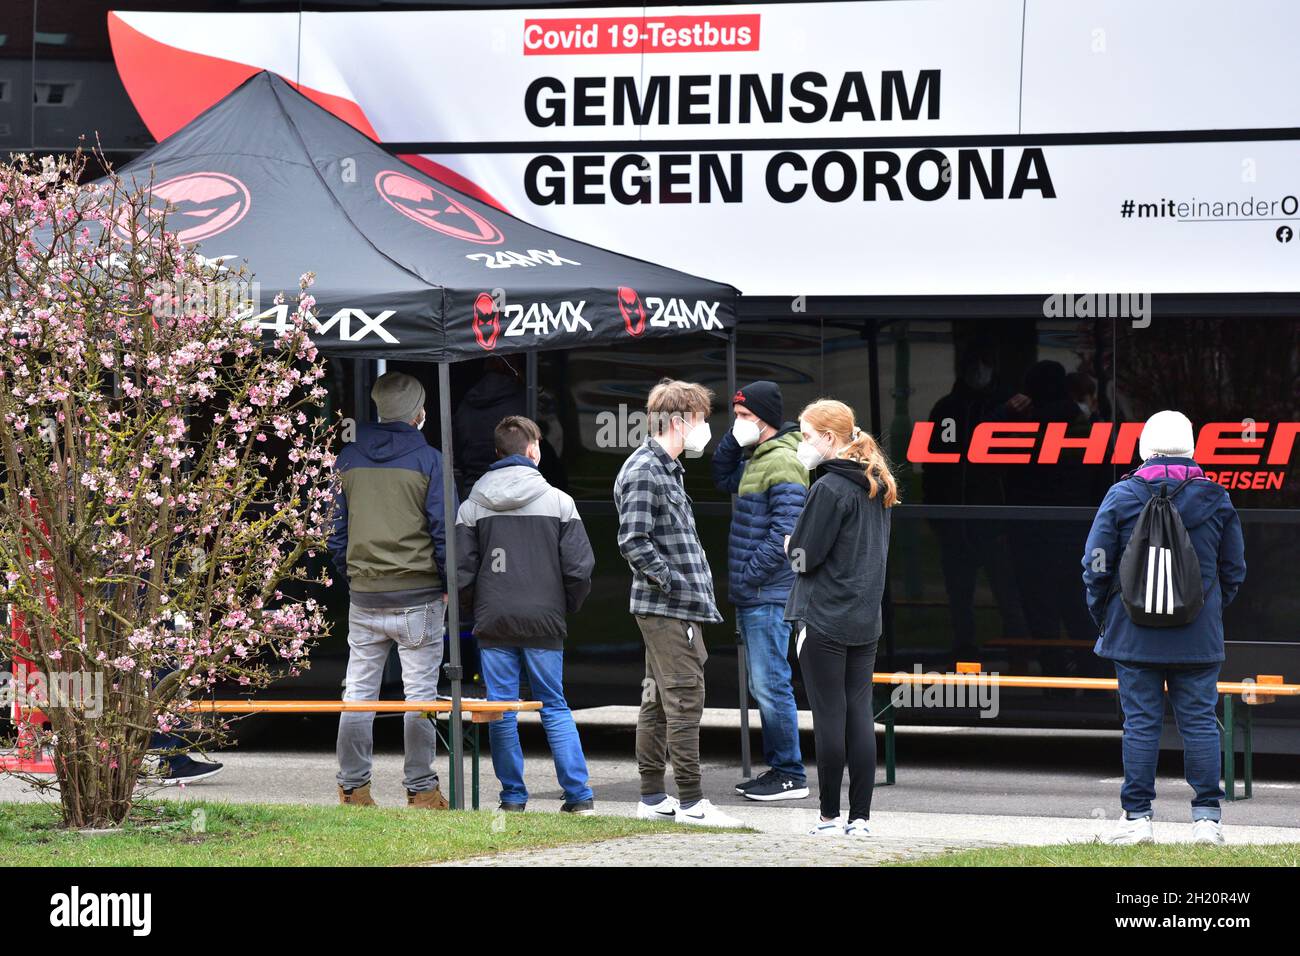 Corona-Testbus 'Gemeinsam gegen Corona' des Landes Oberösterreich unterwegs, Österreich, Europa - Corona test bus 'Together against Corona' from the s Stock Photo